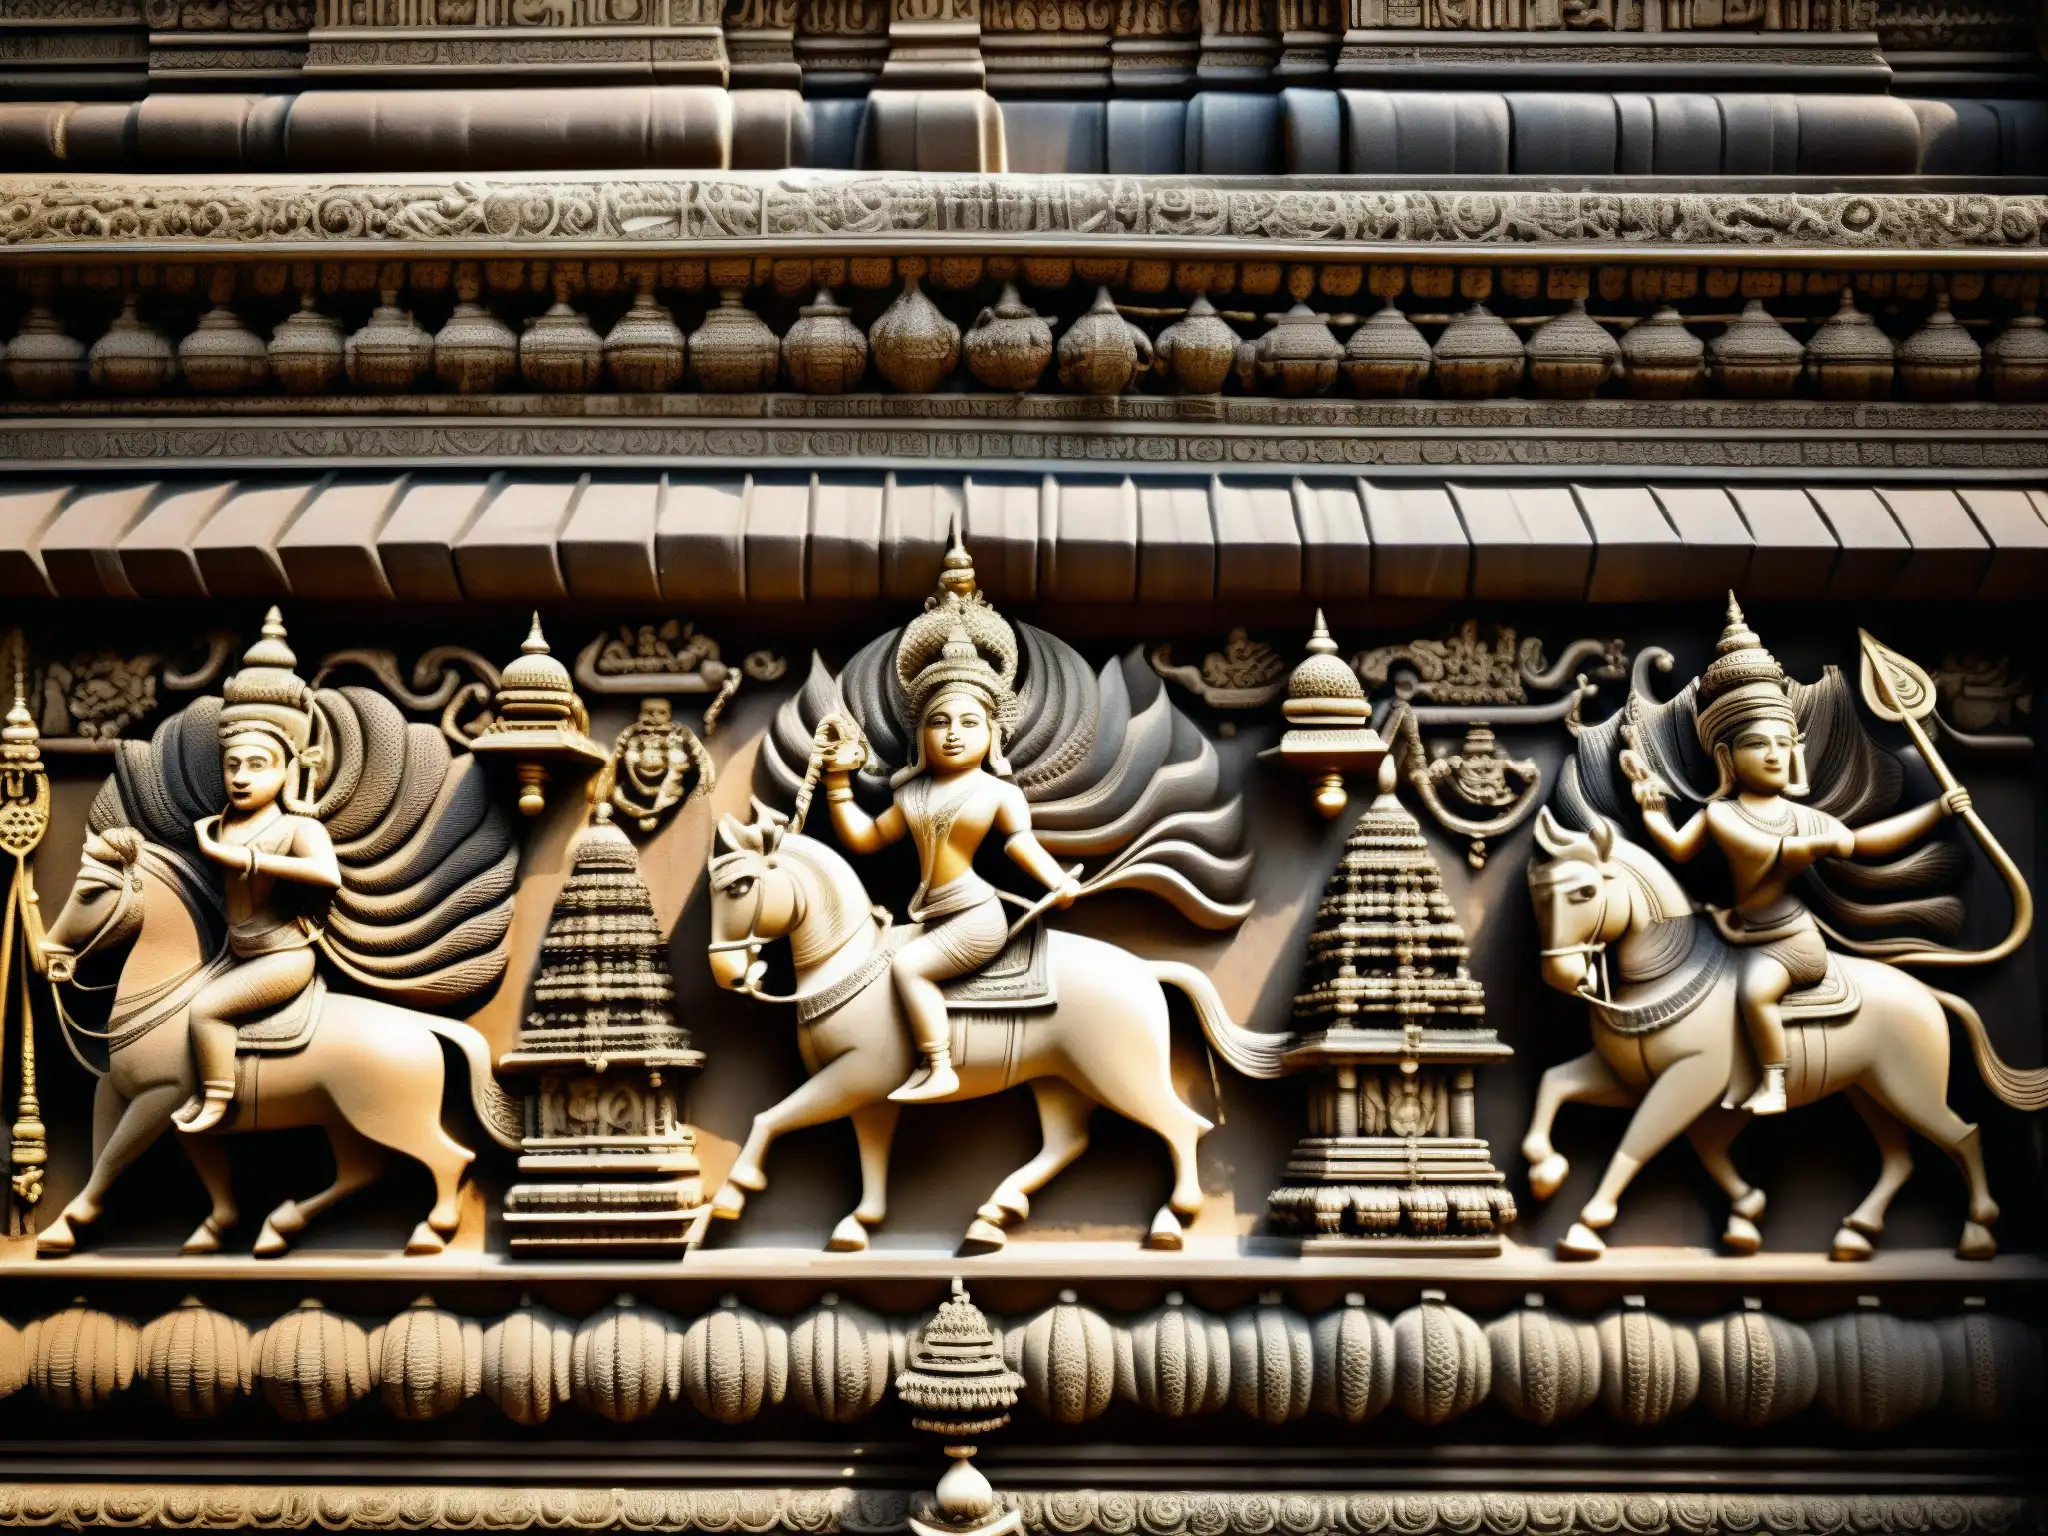 Detalle de las esculturas en el antiguo Templo Padmanabhaswamy, mostrando su rica historia y misticismo